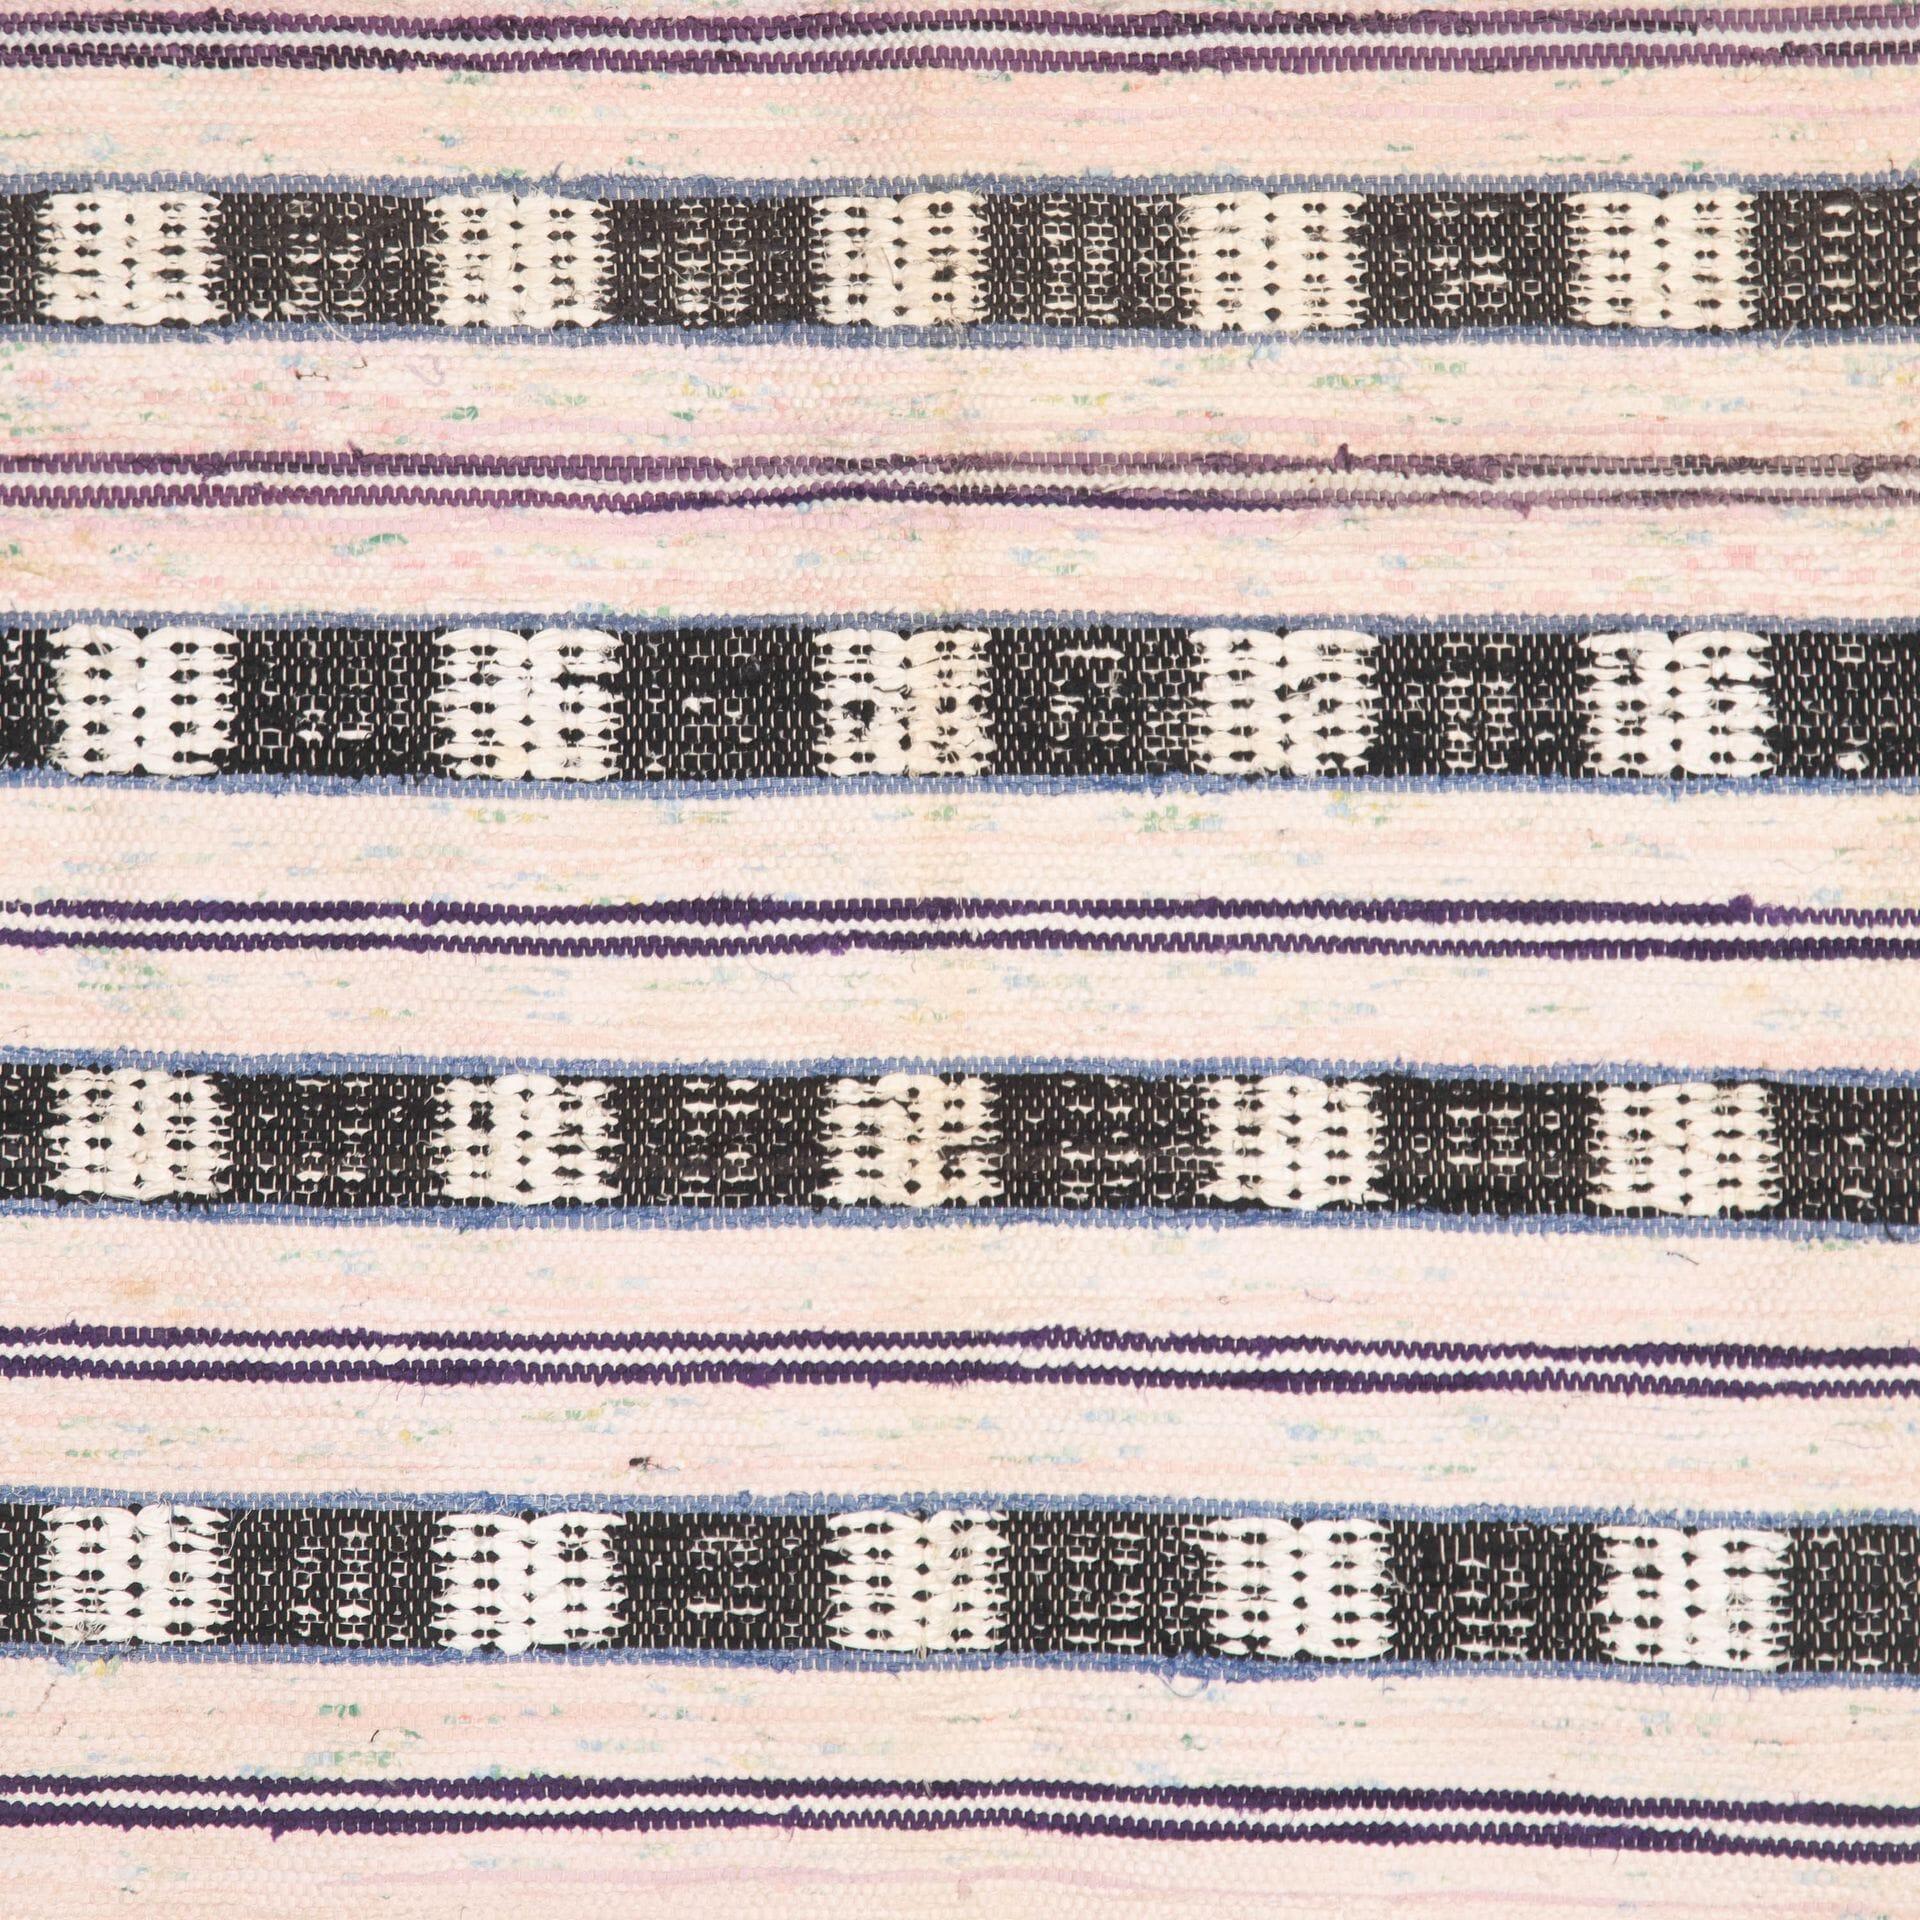 Traditioneller schwedischer Teppich des 20. Jahrhunderts, rosa, blau, lila, schwarz.